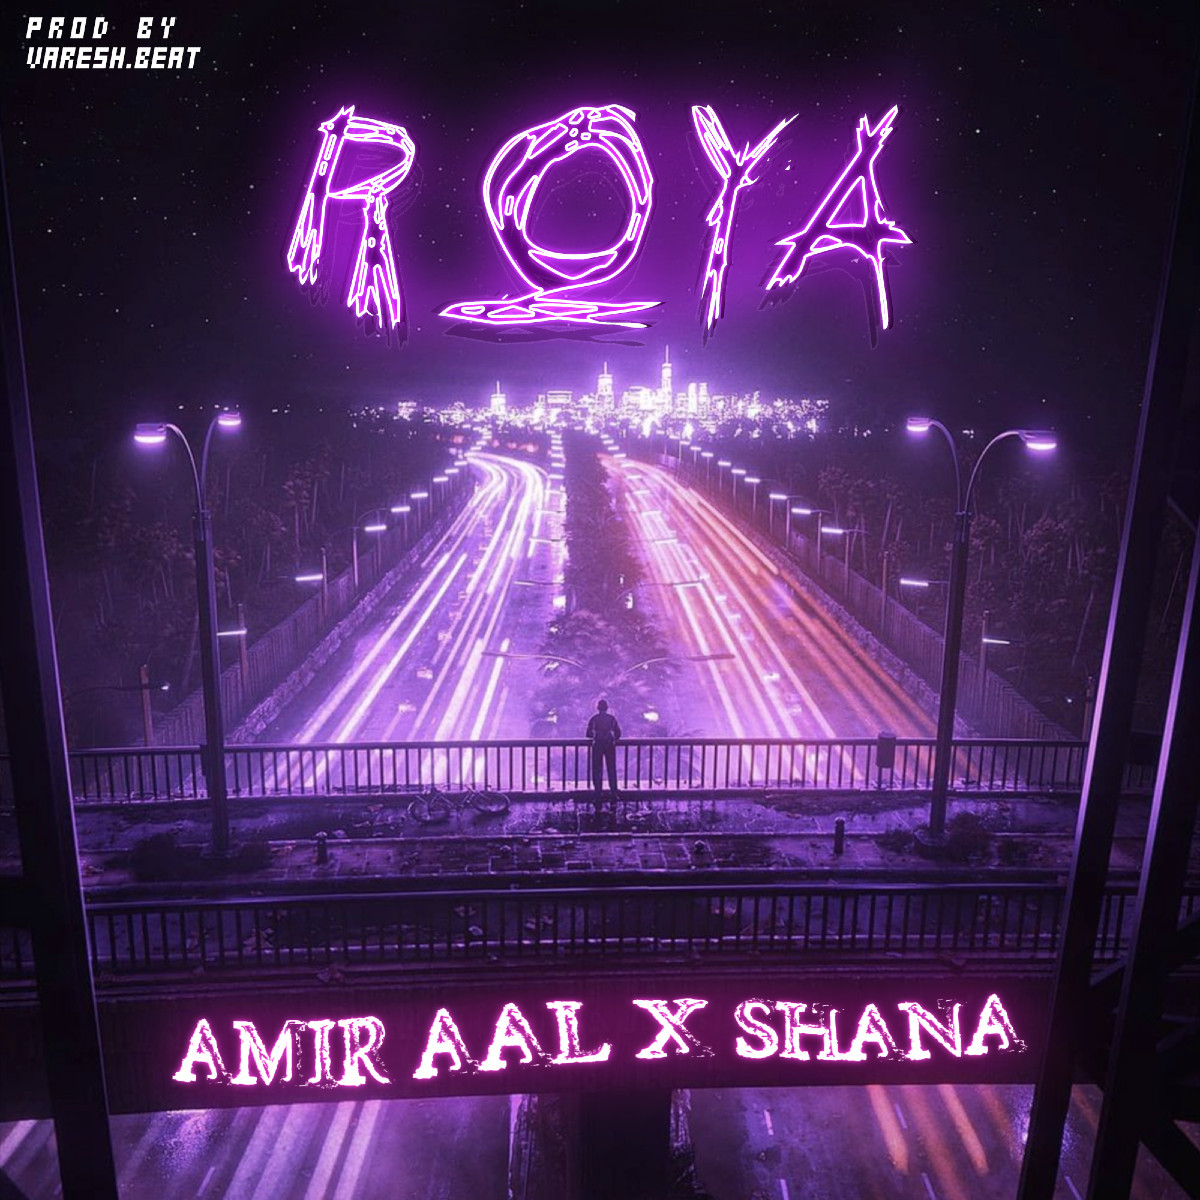 AmirAal x Shana - Roya